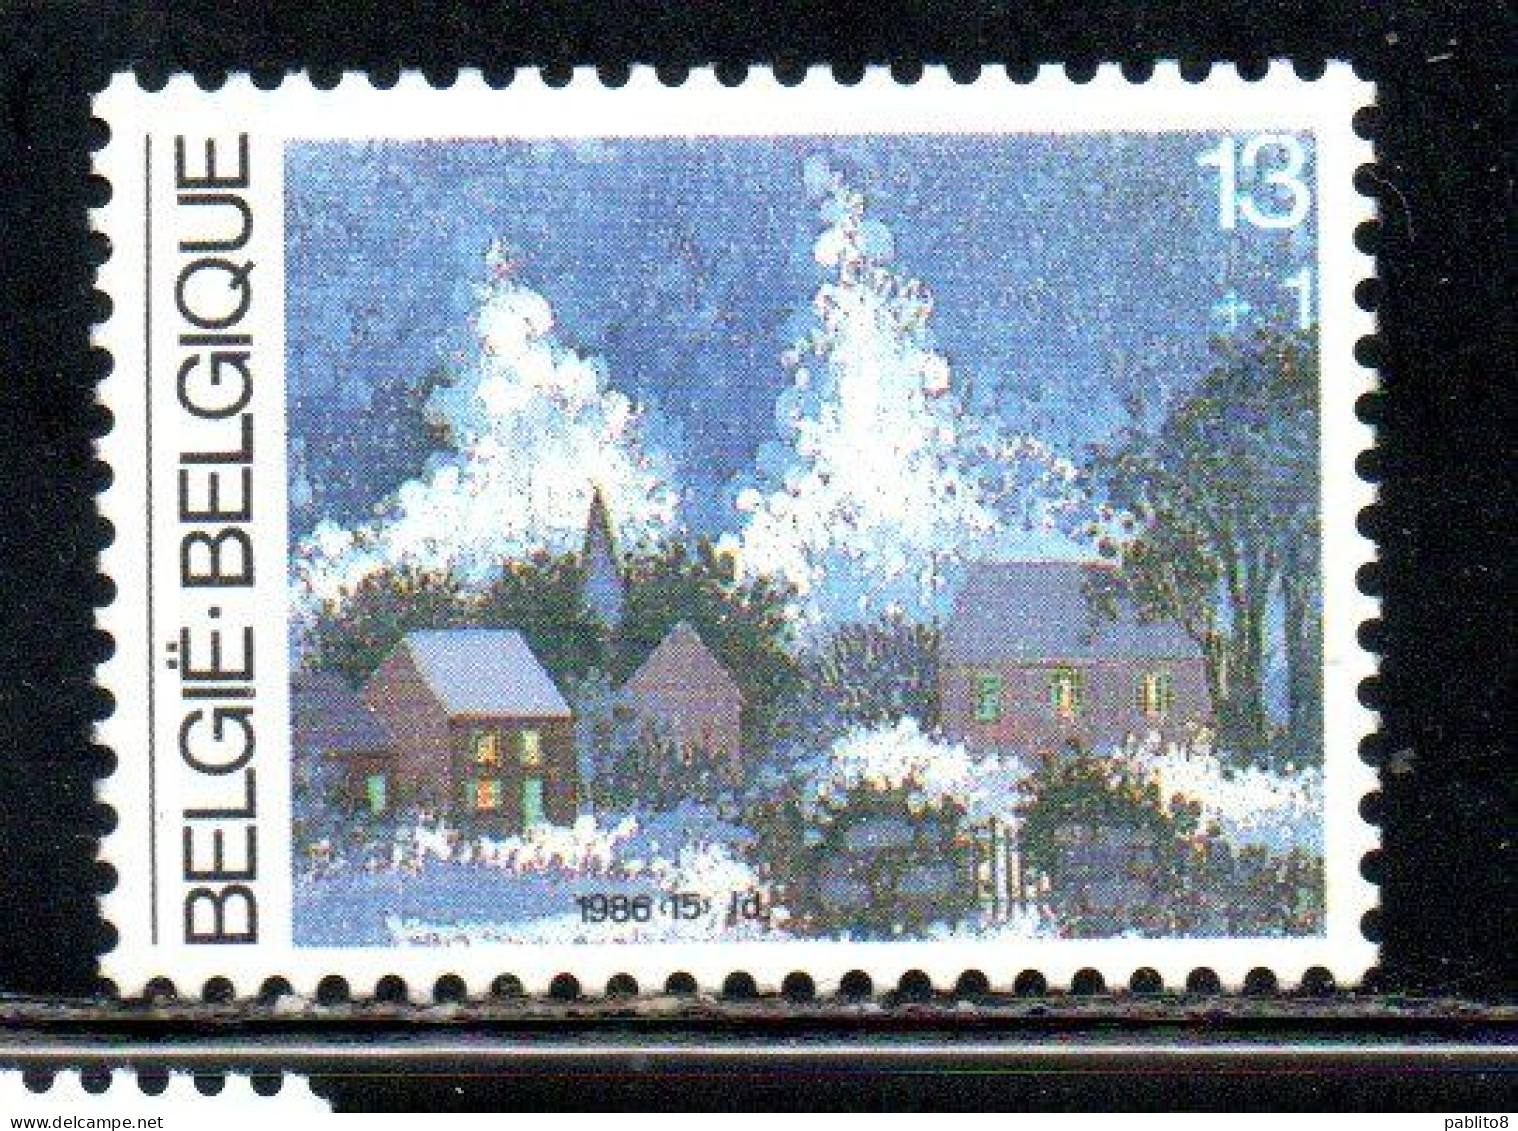 BELGIQUE BELGIE BELGIO BELGIUM 1986 CHRISTMAS NOEL NATALE WEIHNACHTEN NAVIDAD 13 + 1fr MNH - Unused Stamps